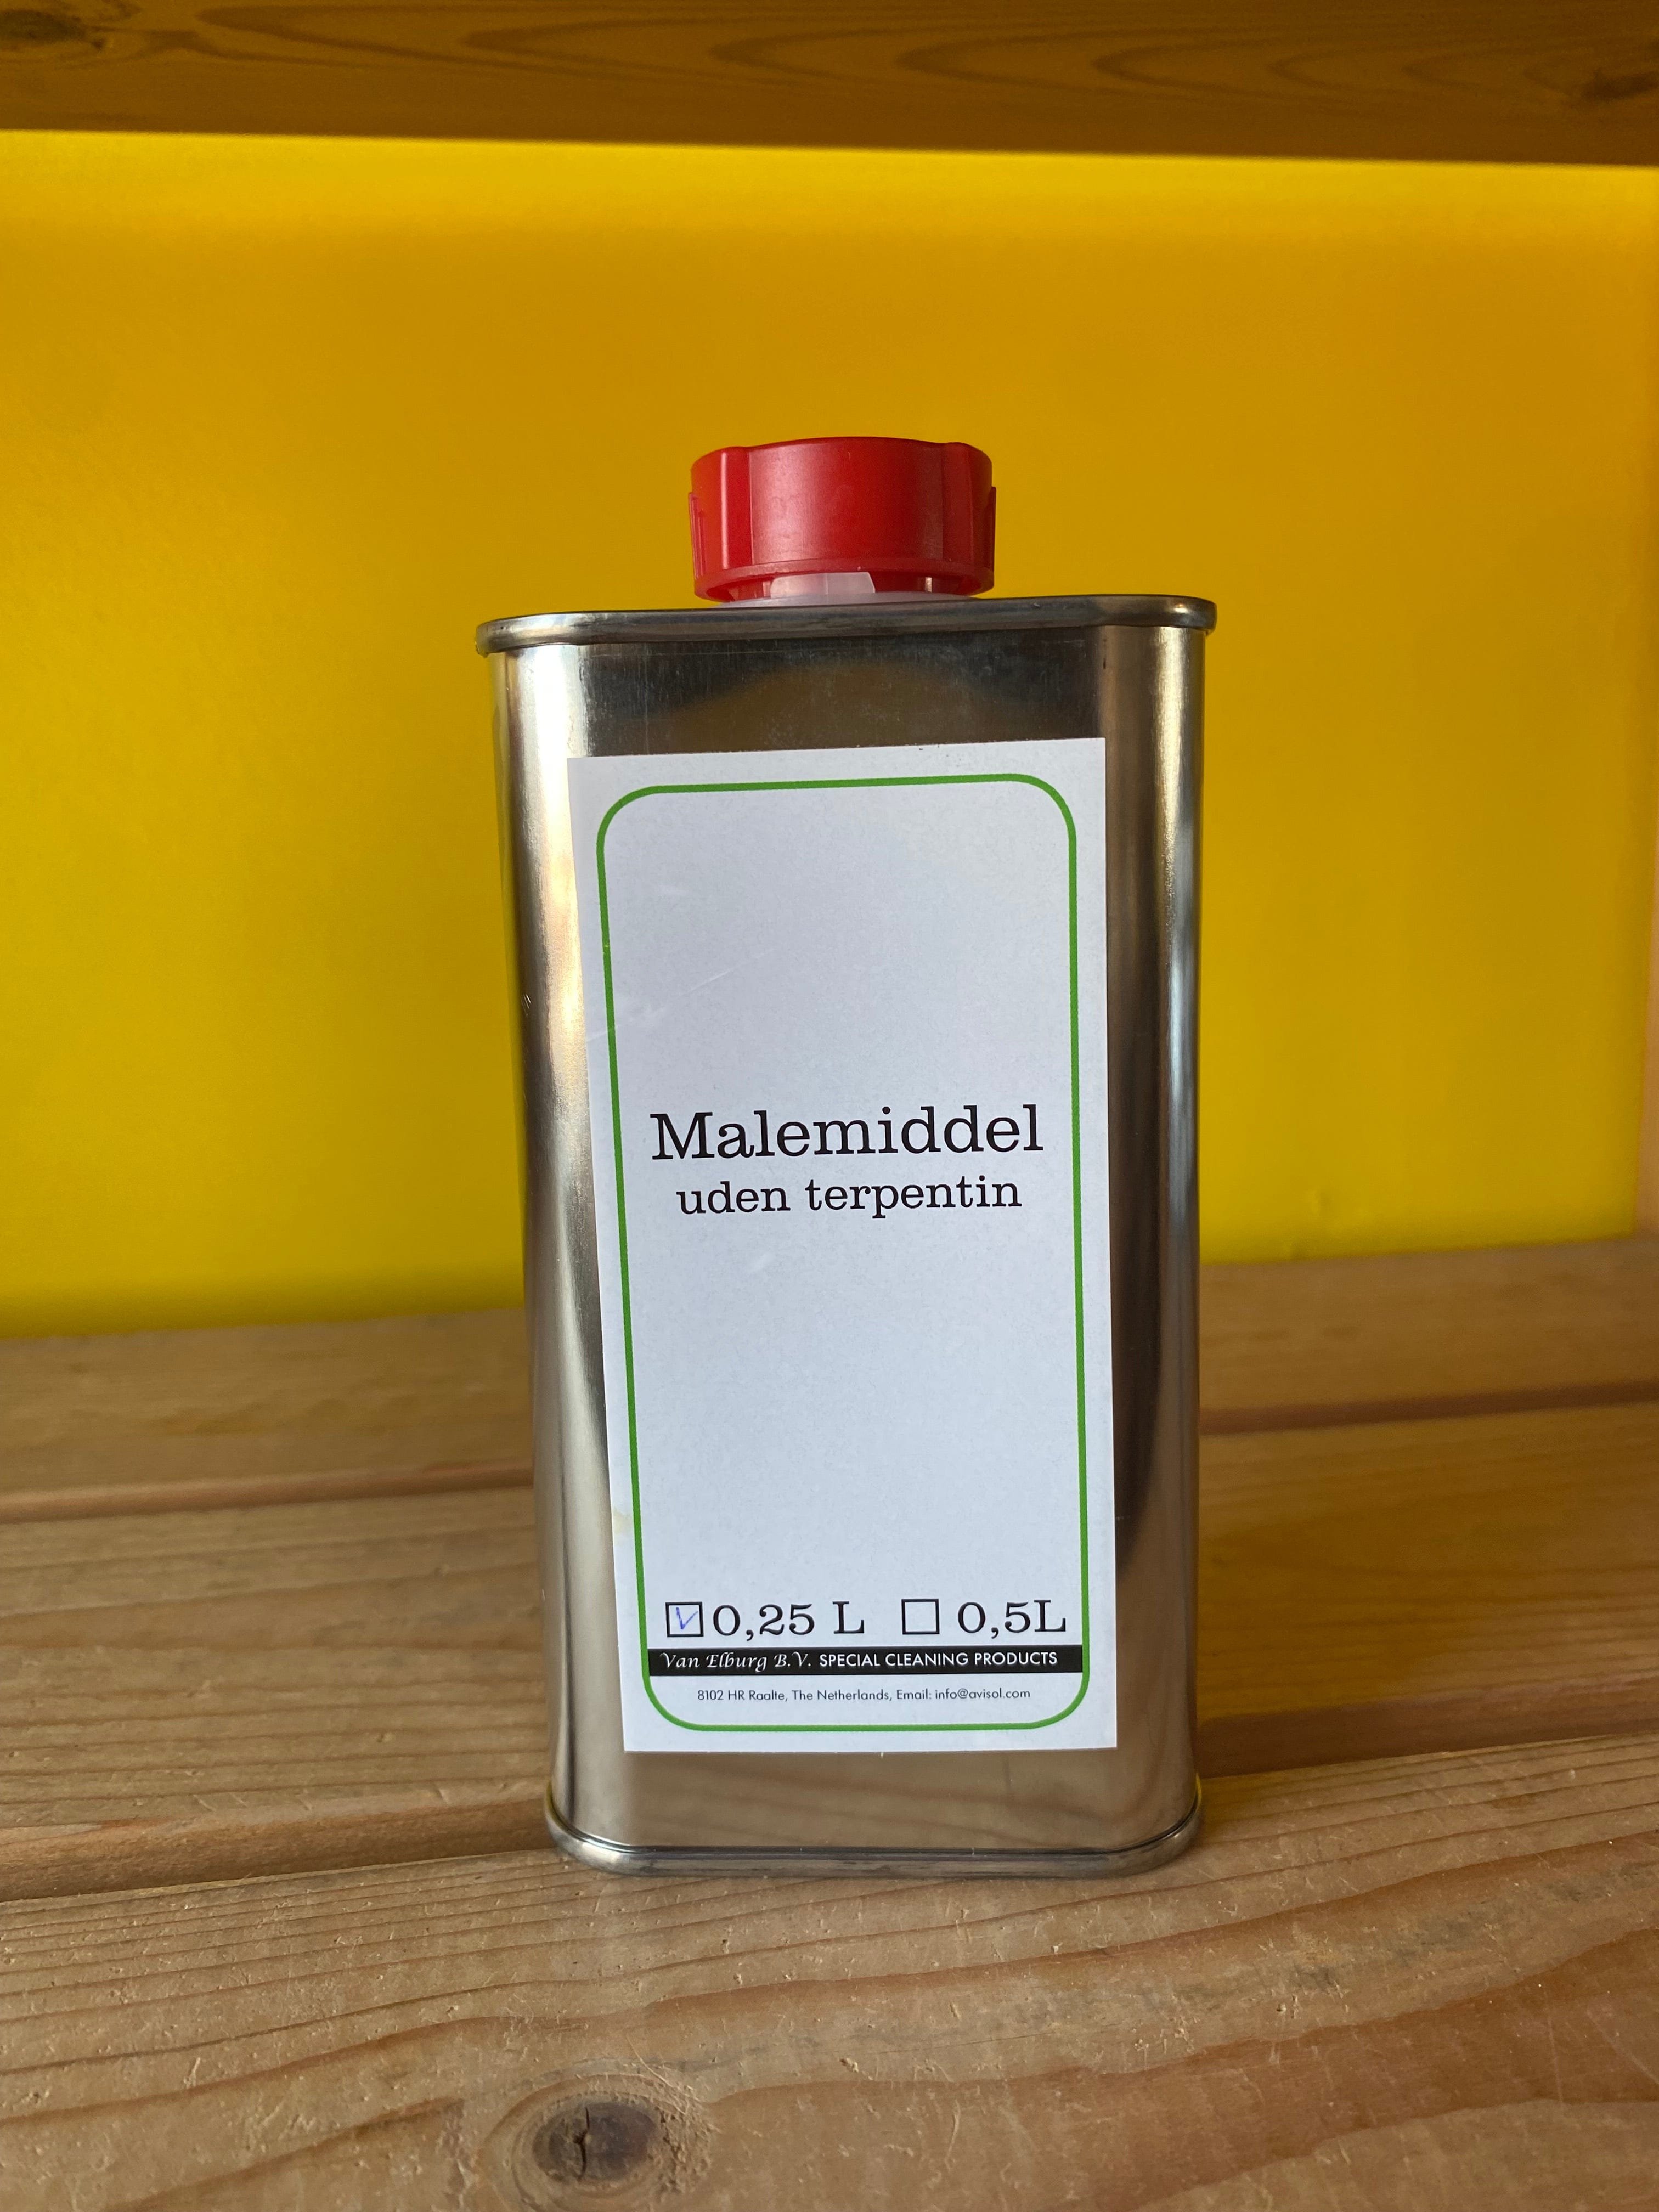 Stellings Paint Mediums 250 ml Malemiddel uden terpentin